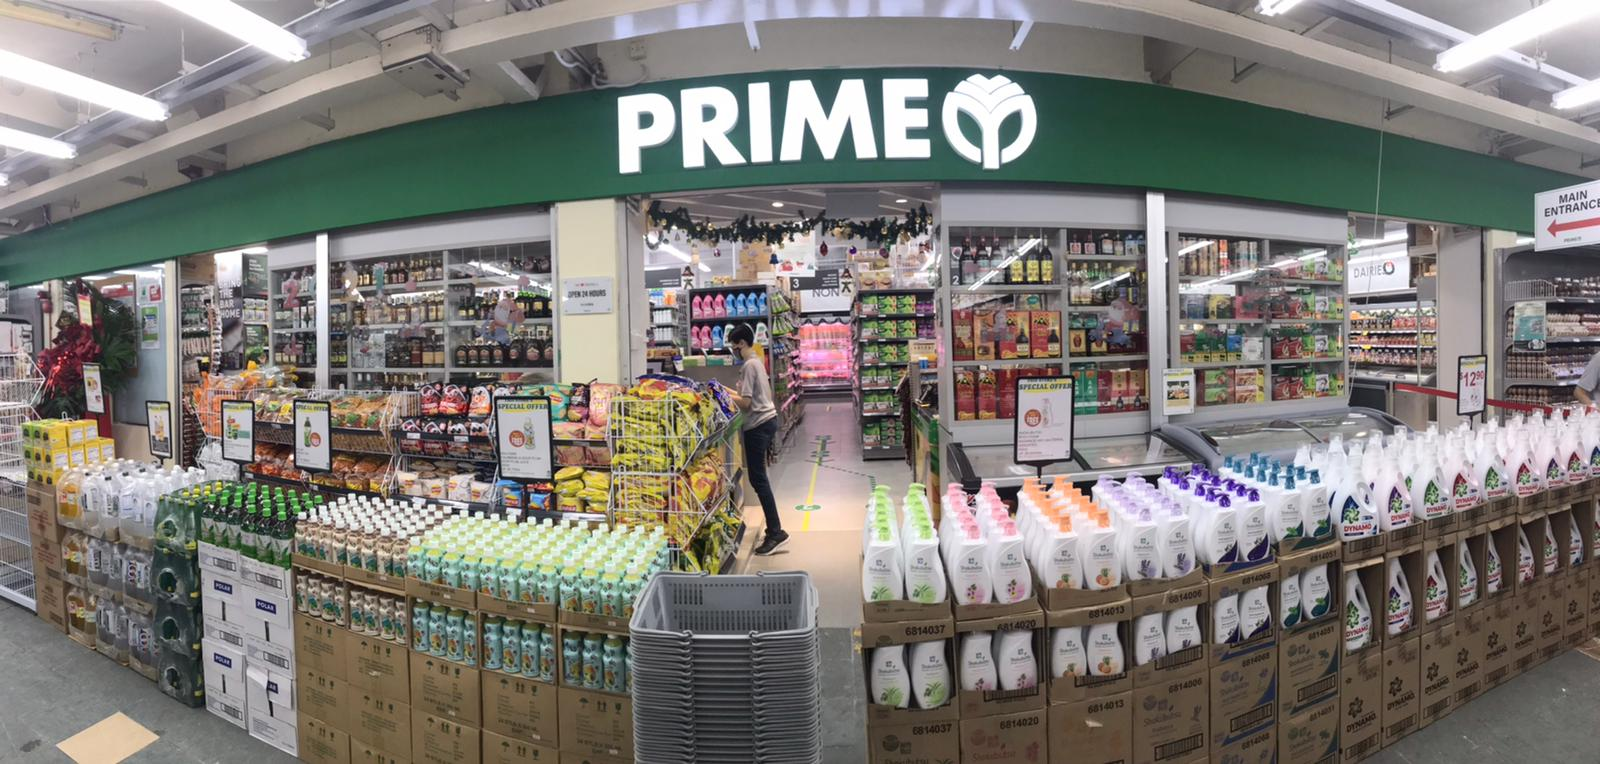 prime - supermarkets in singaporev 